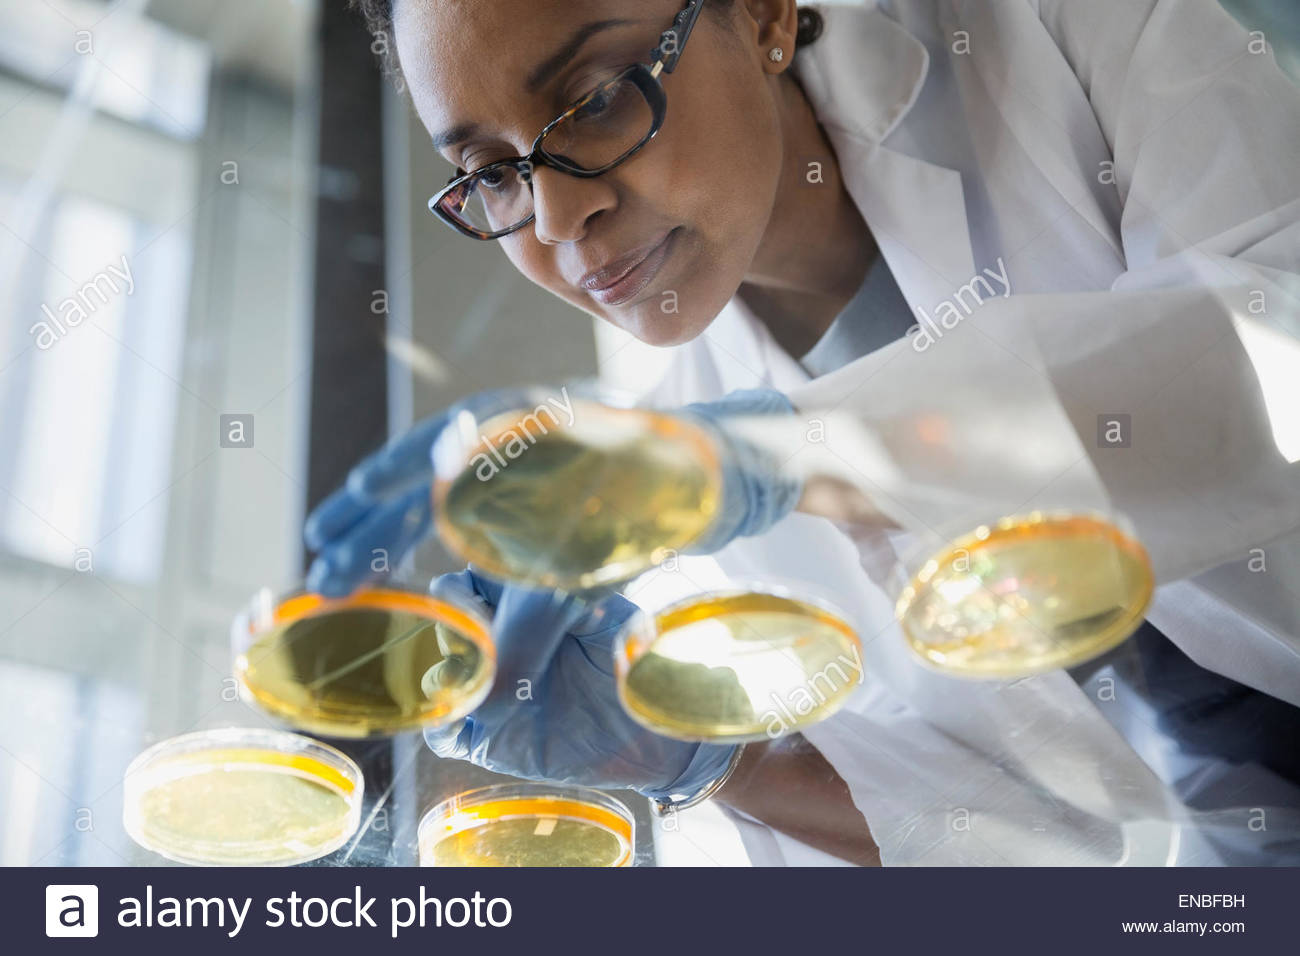 Focused scientist examining petri dishes Stock Photo